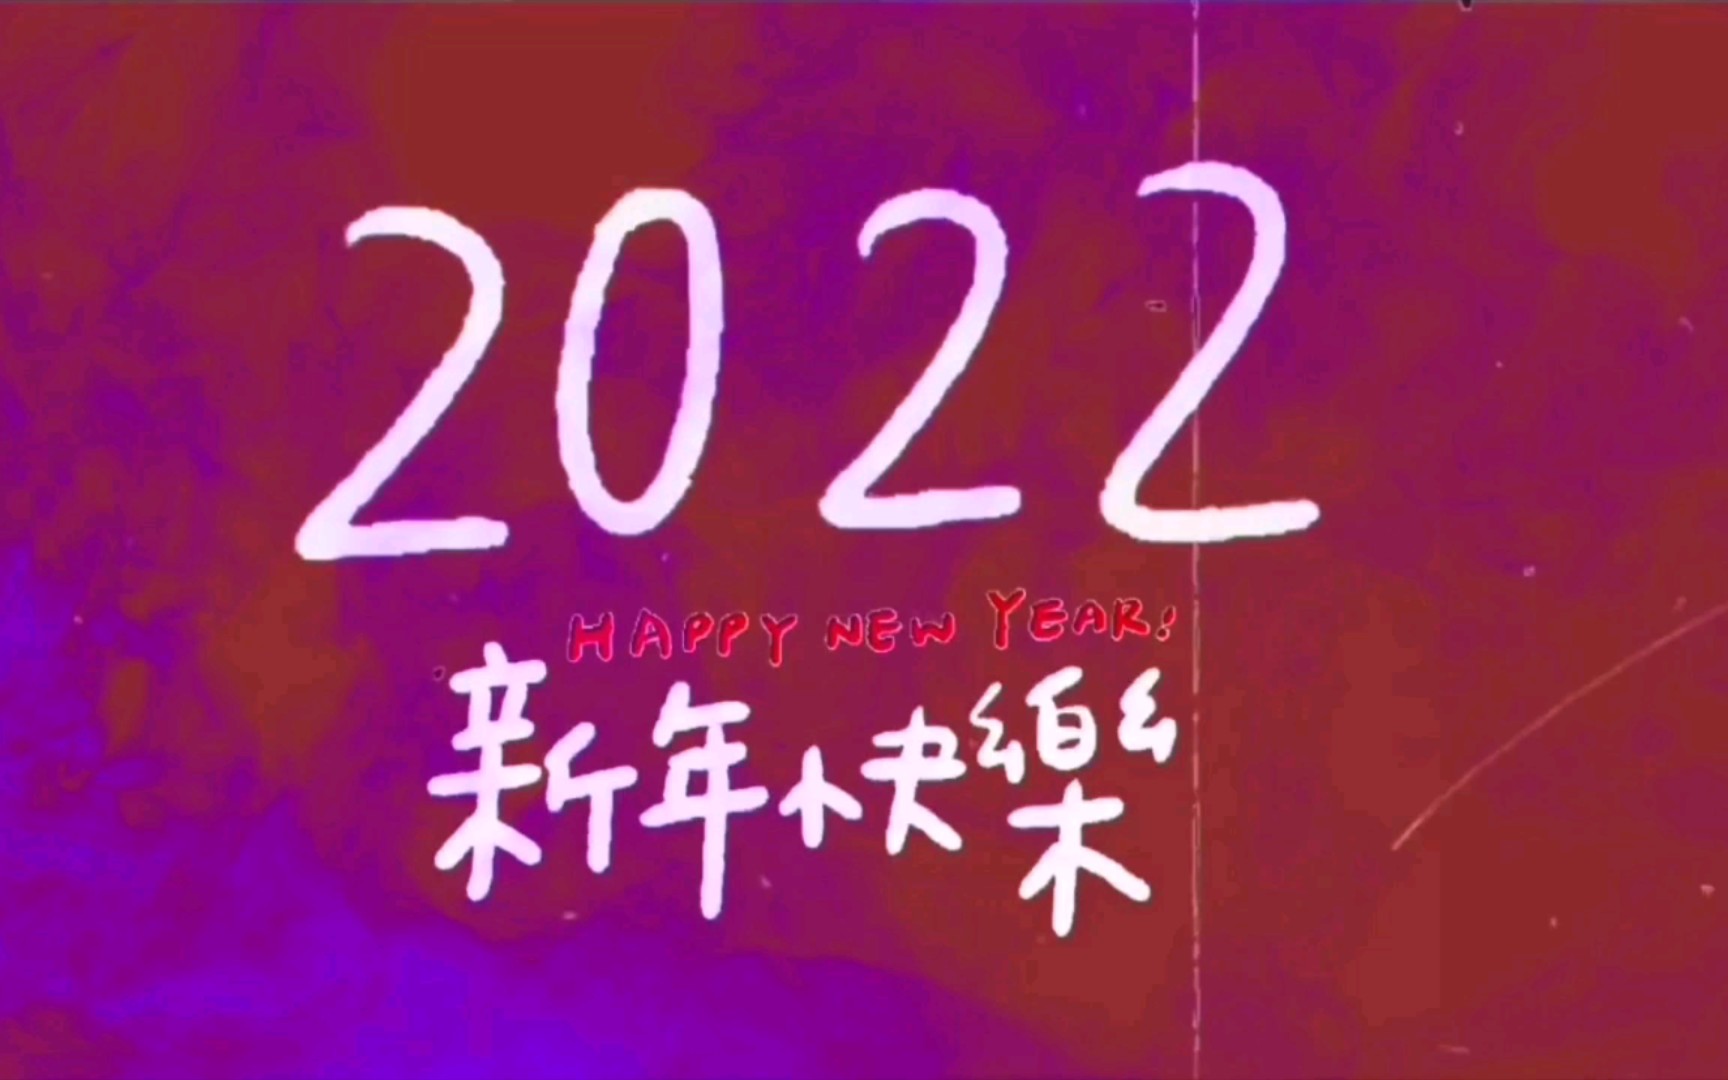 2022新年新祝福,送好运噢